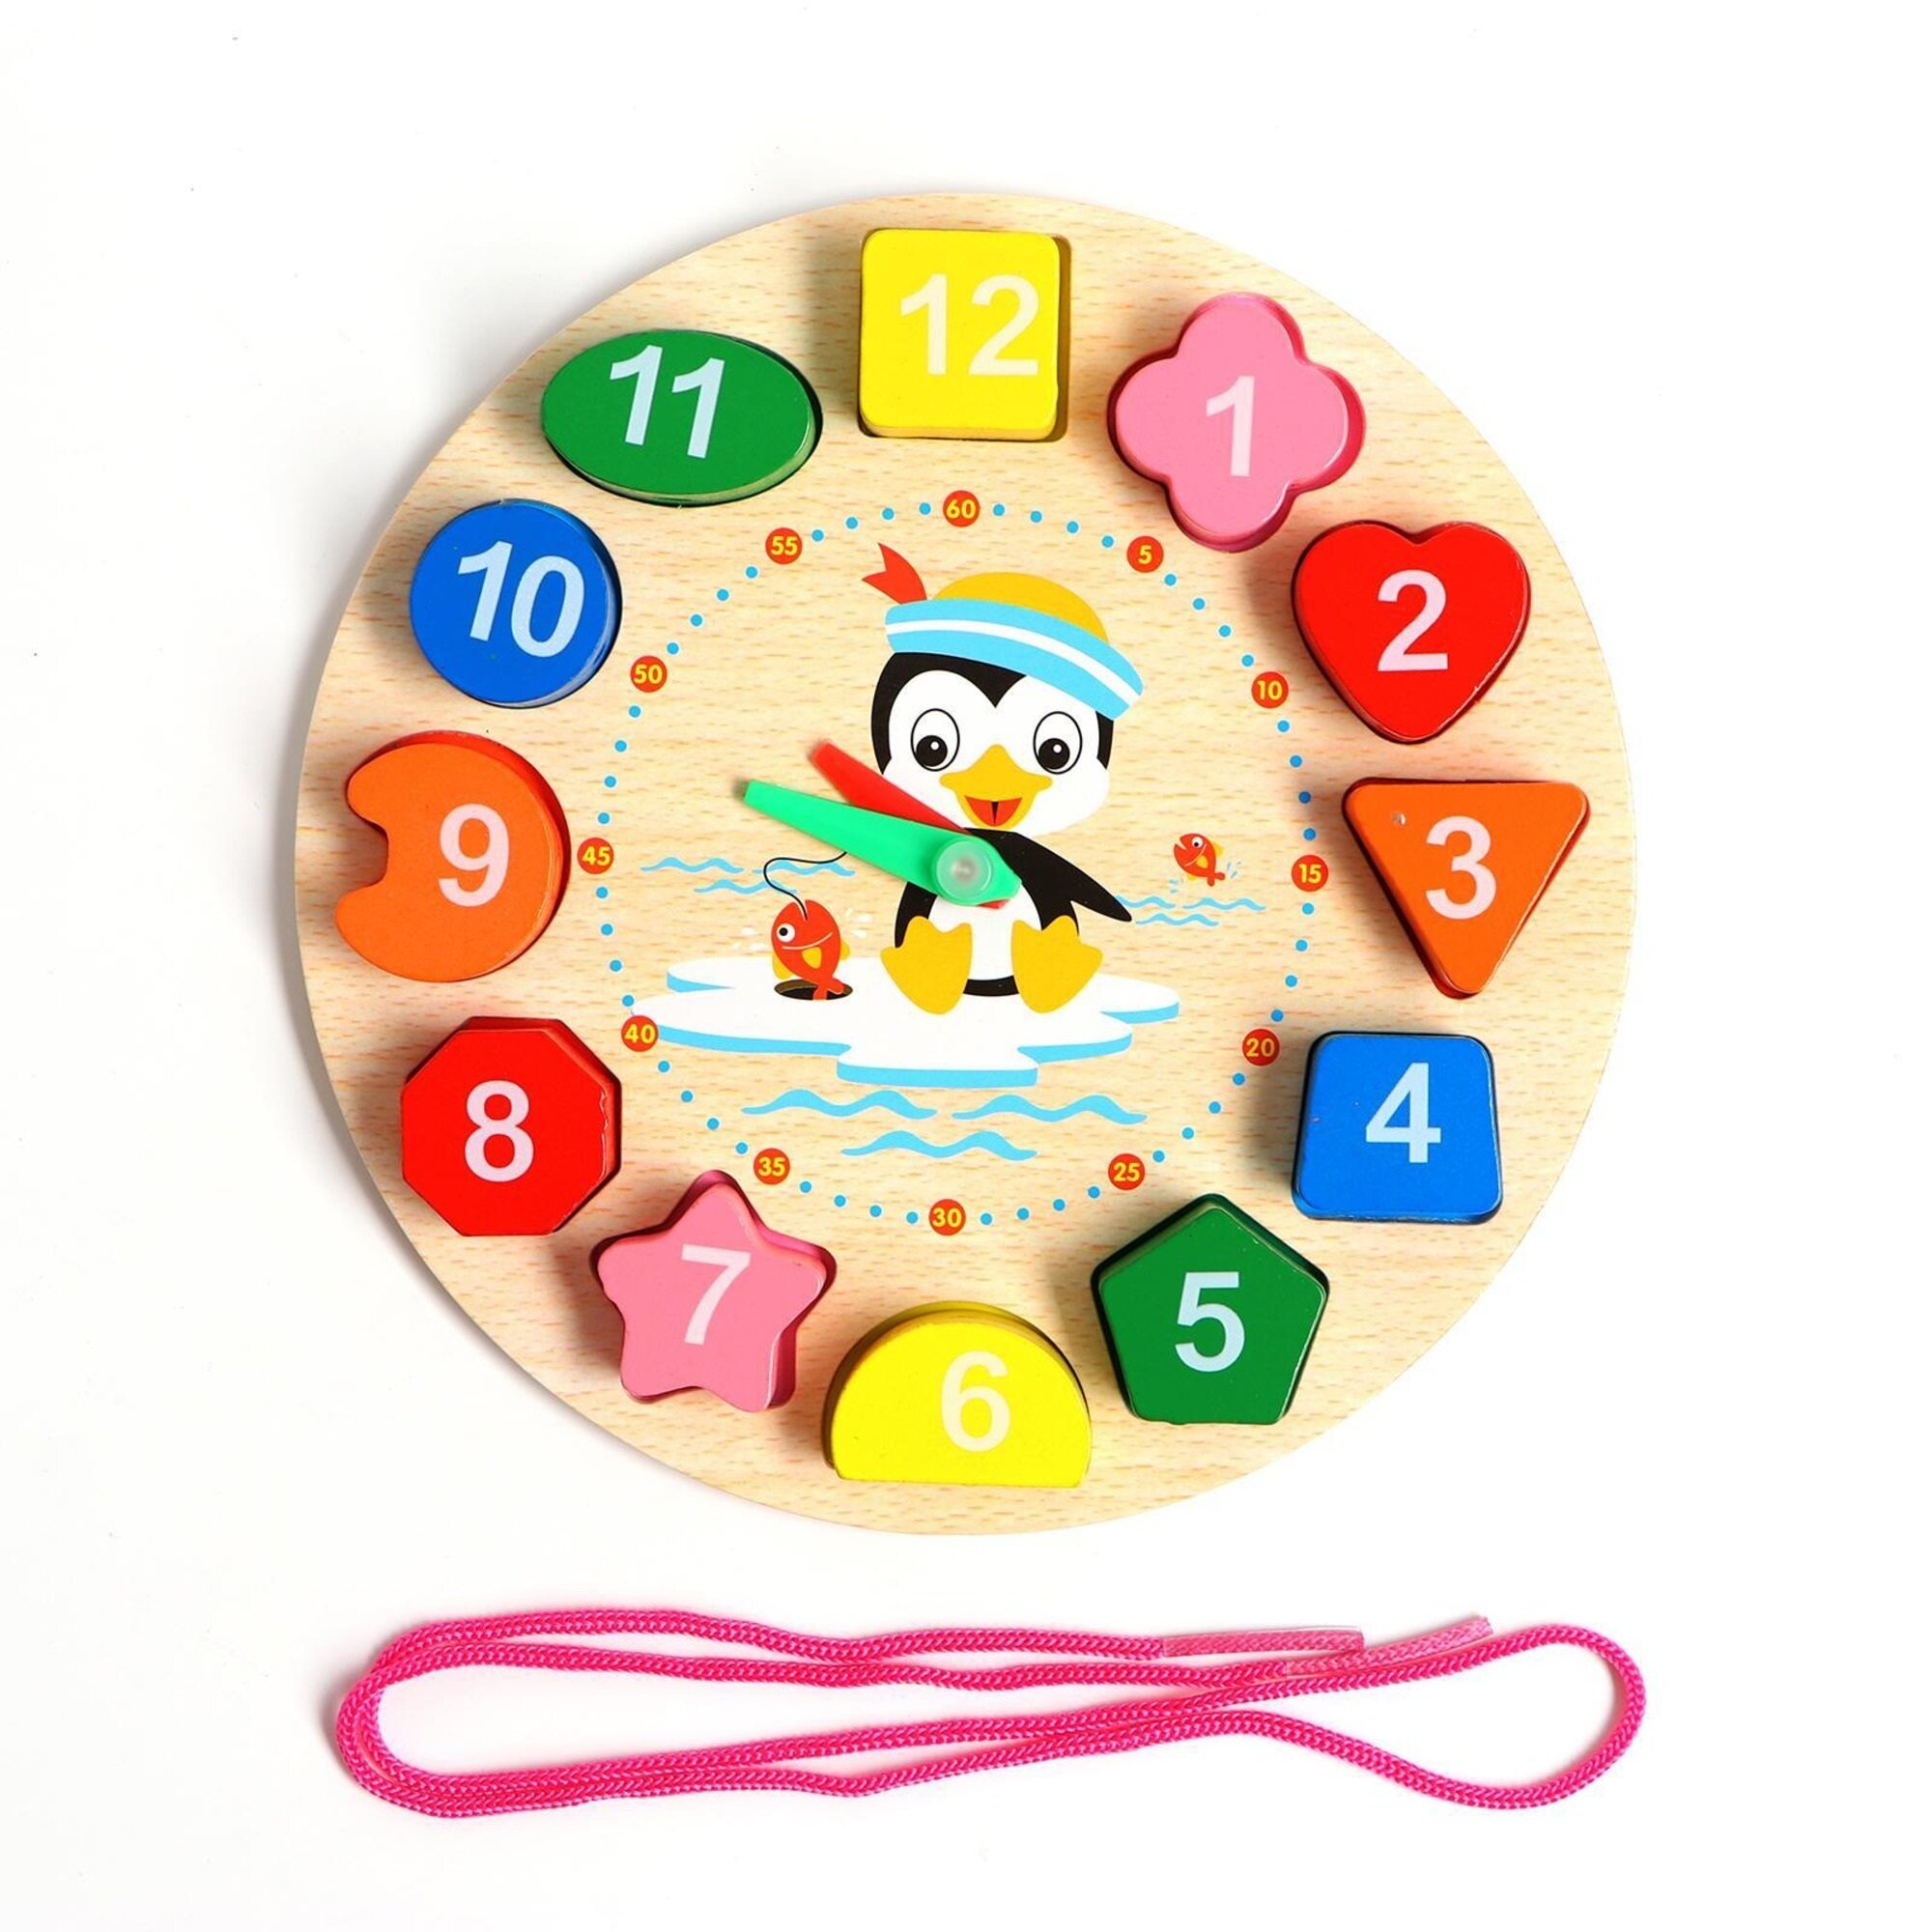 Развивающая игрушка Сима-ленд Пингвин, 5374996, разноцветный